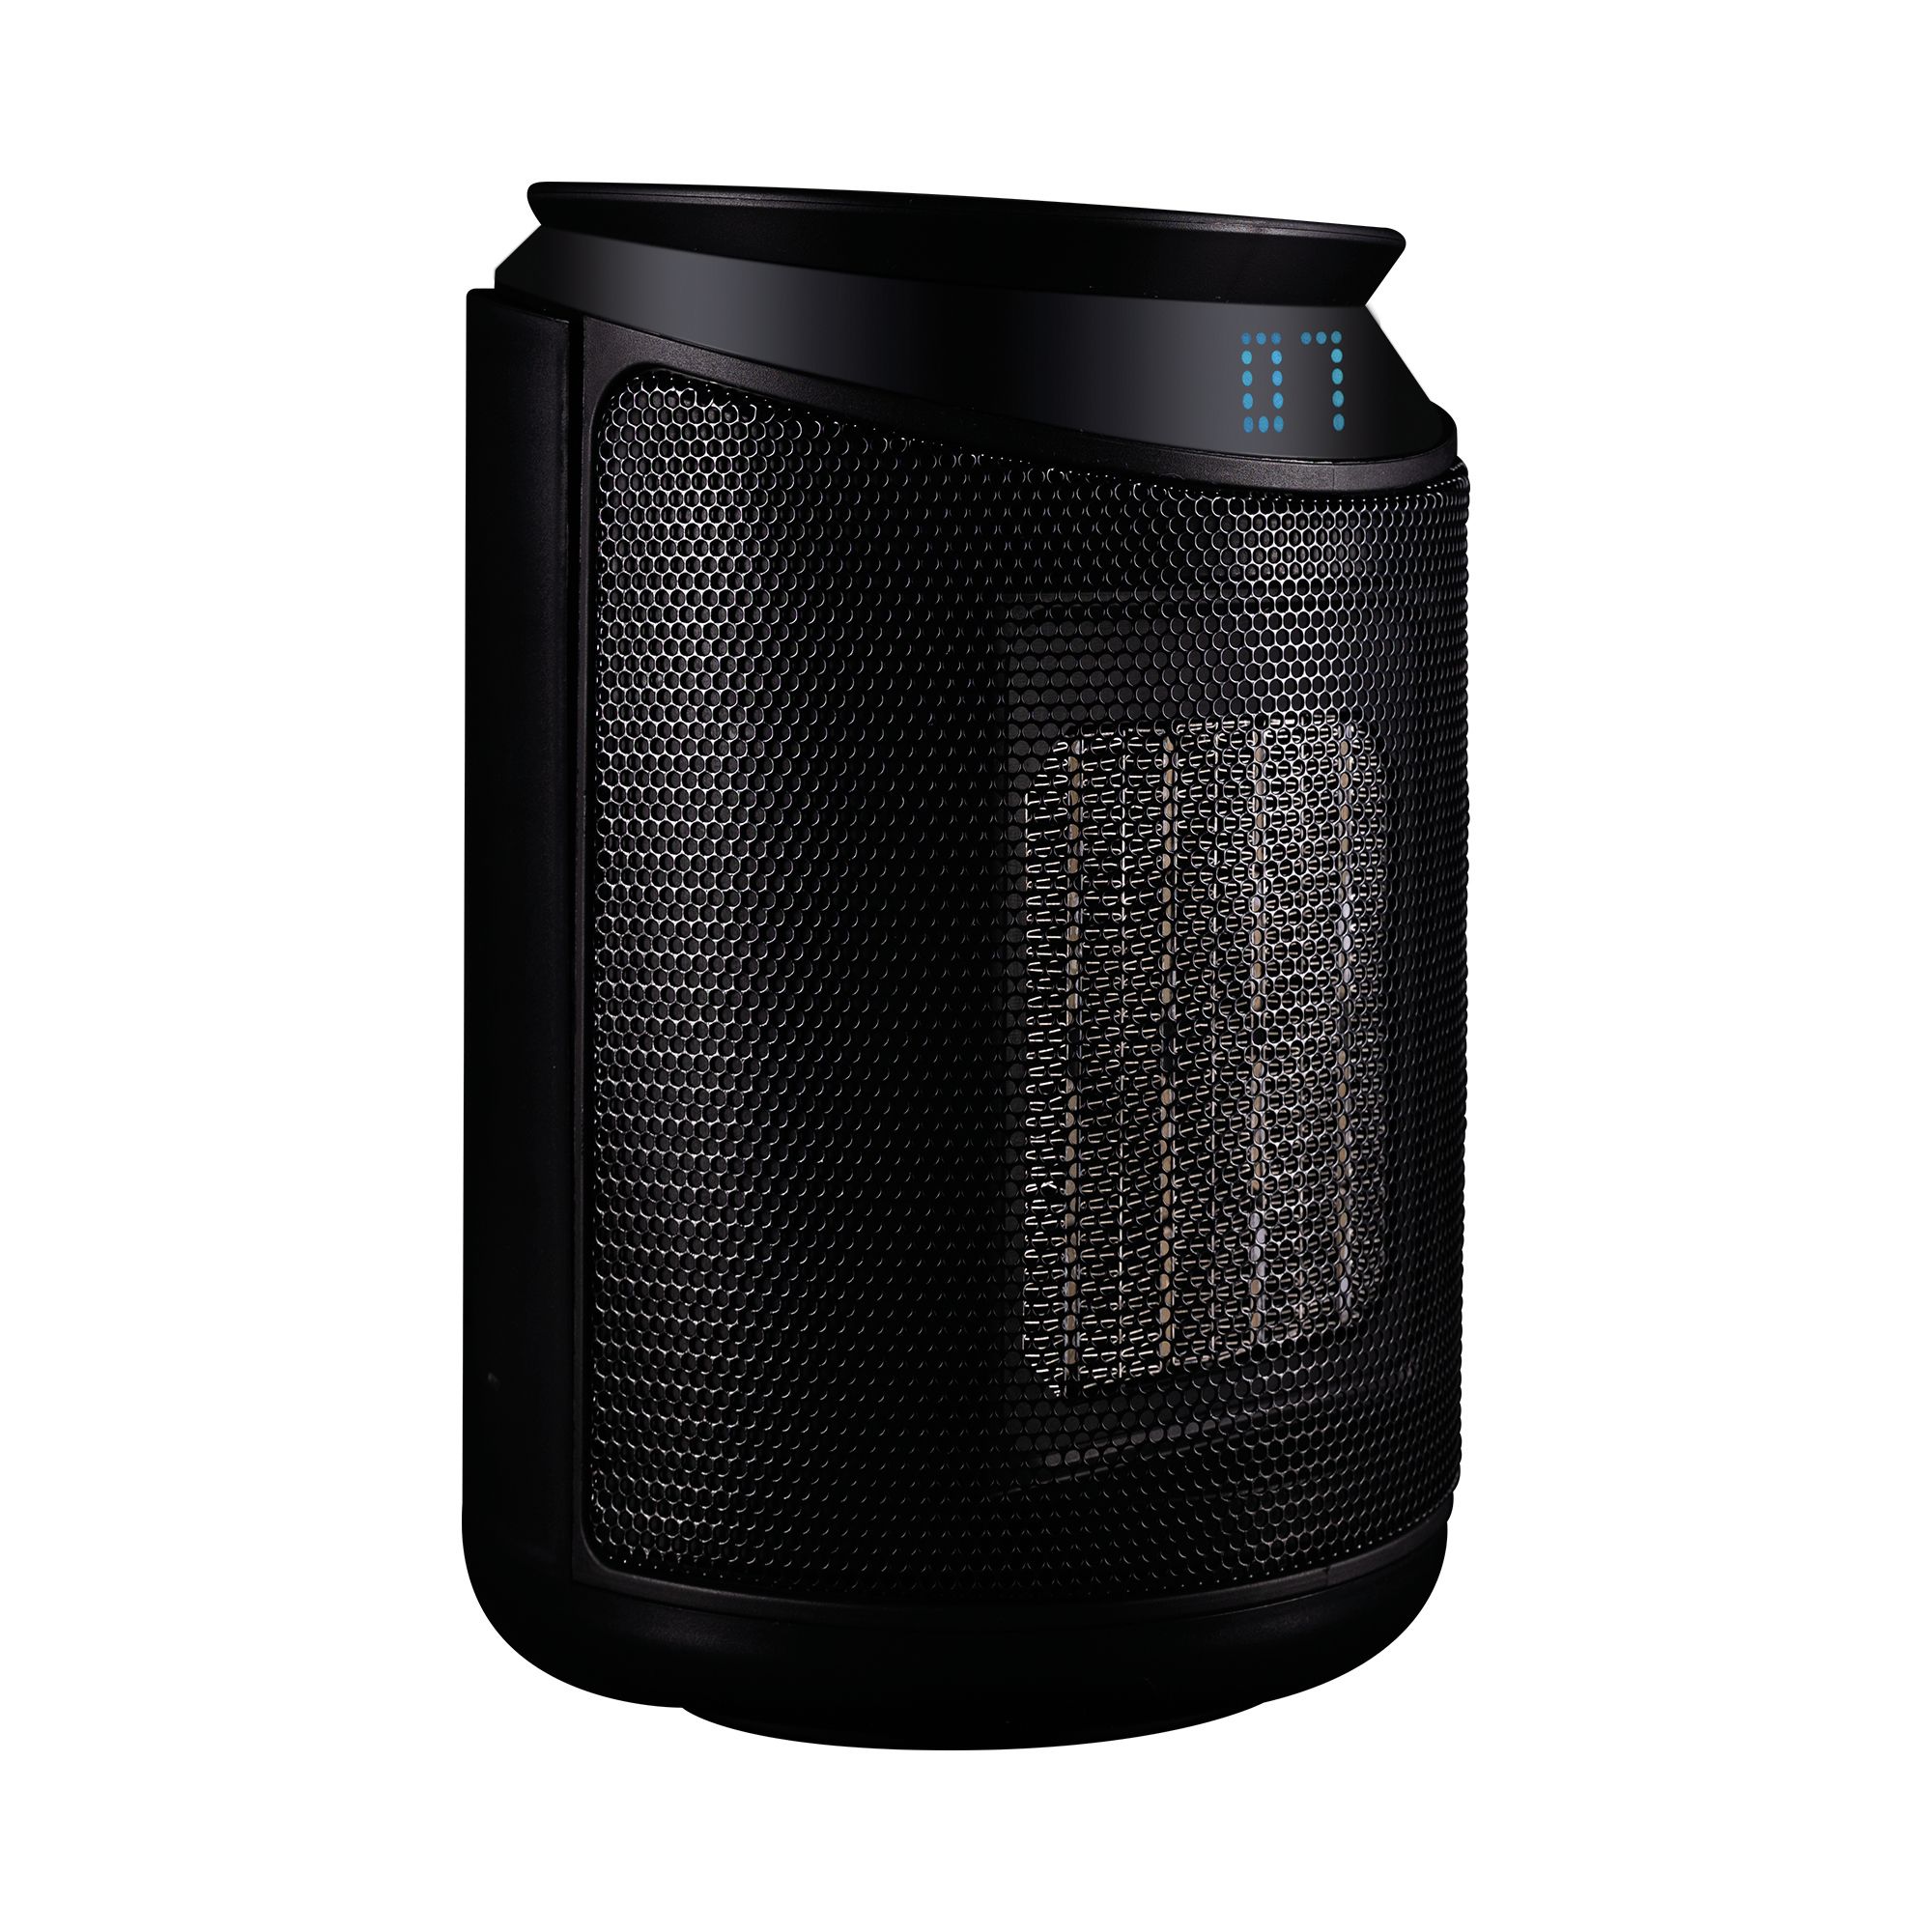 TCP 2000W Black Freestanding Smart Dry Digital Fan heater